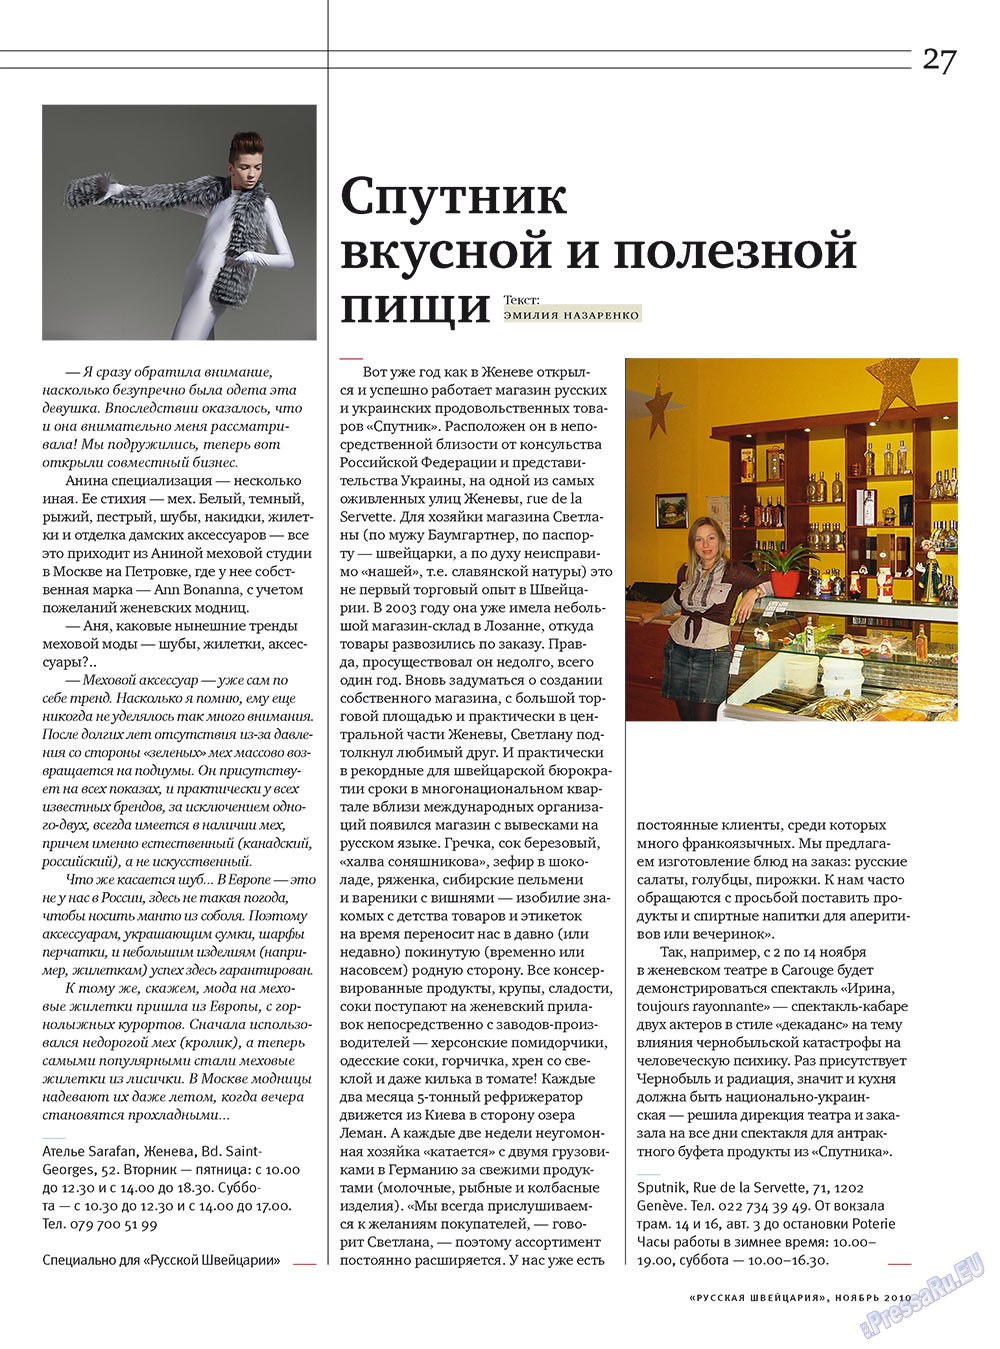 Russkaja Schweizaria (Zeitschrift). 2010 Jahr, Ausgabe 9, Seite 27